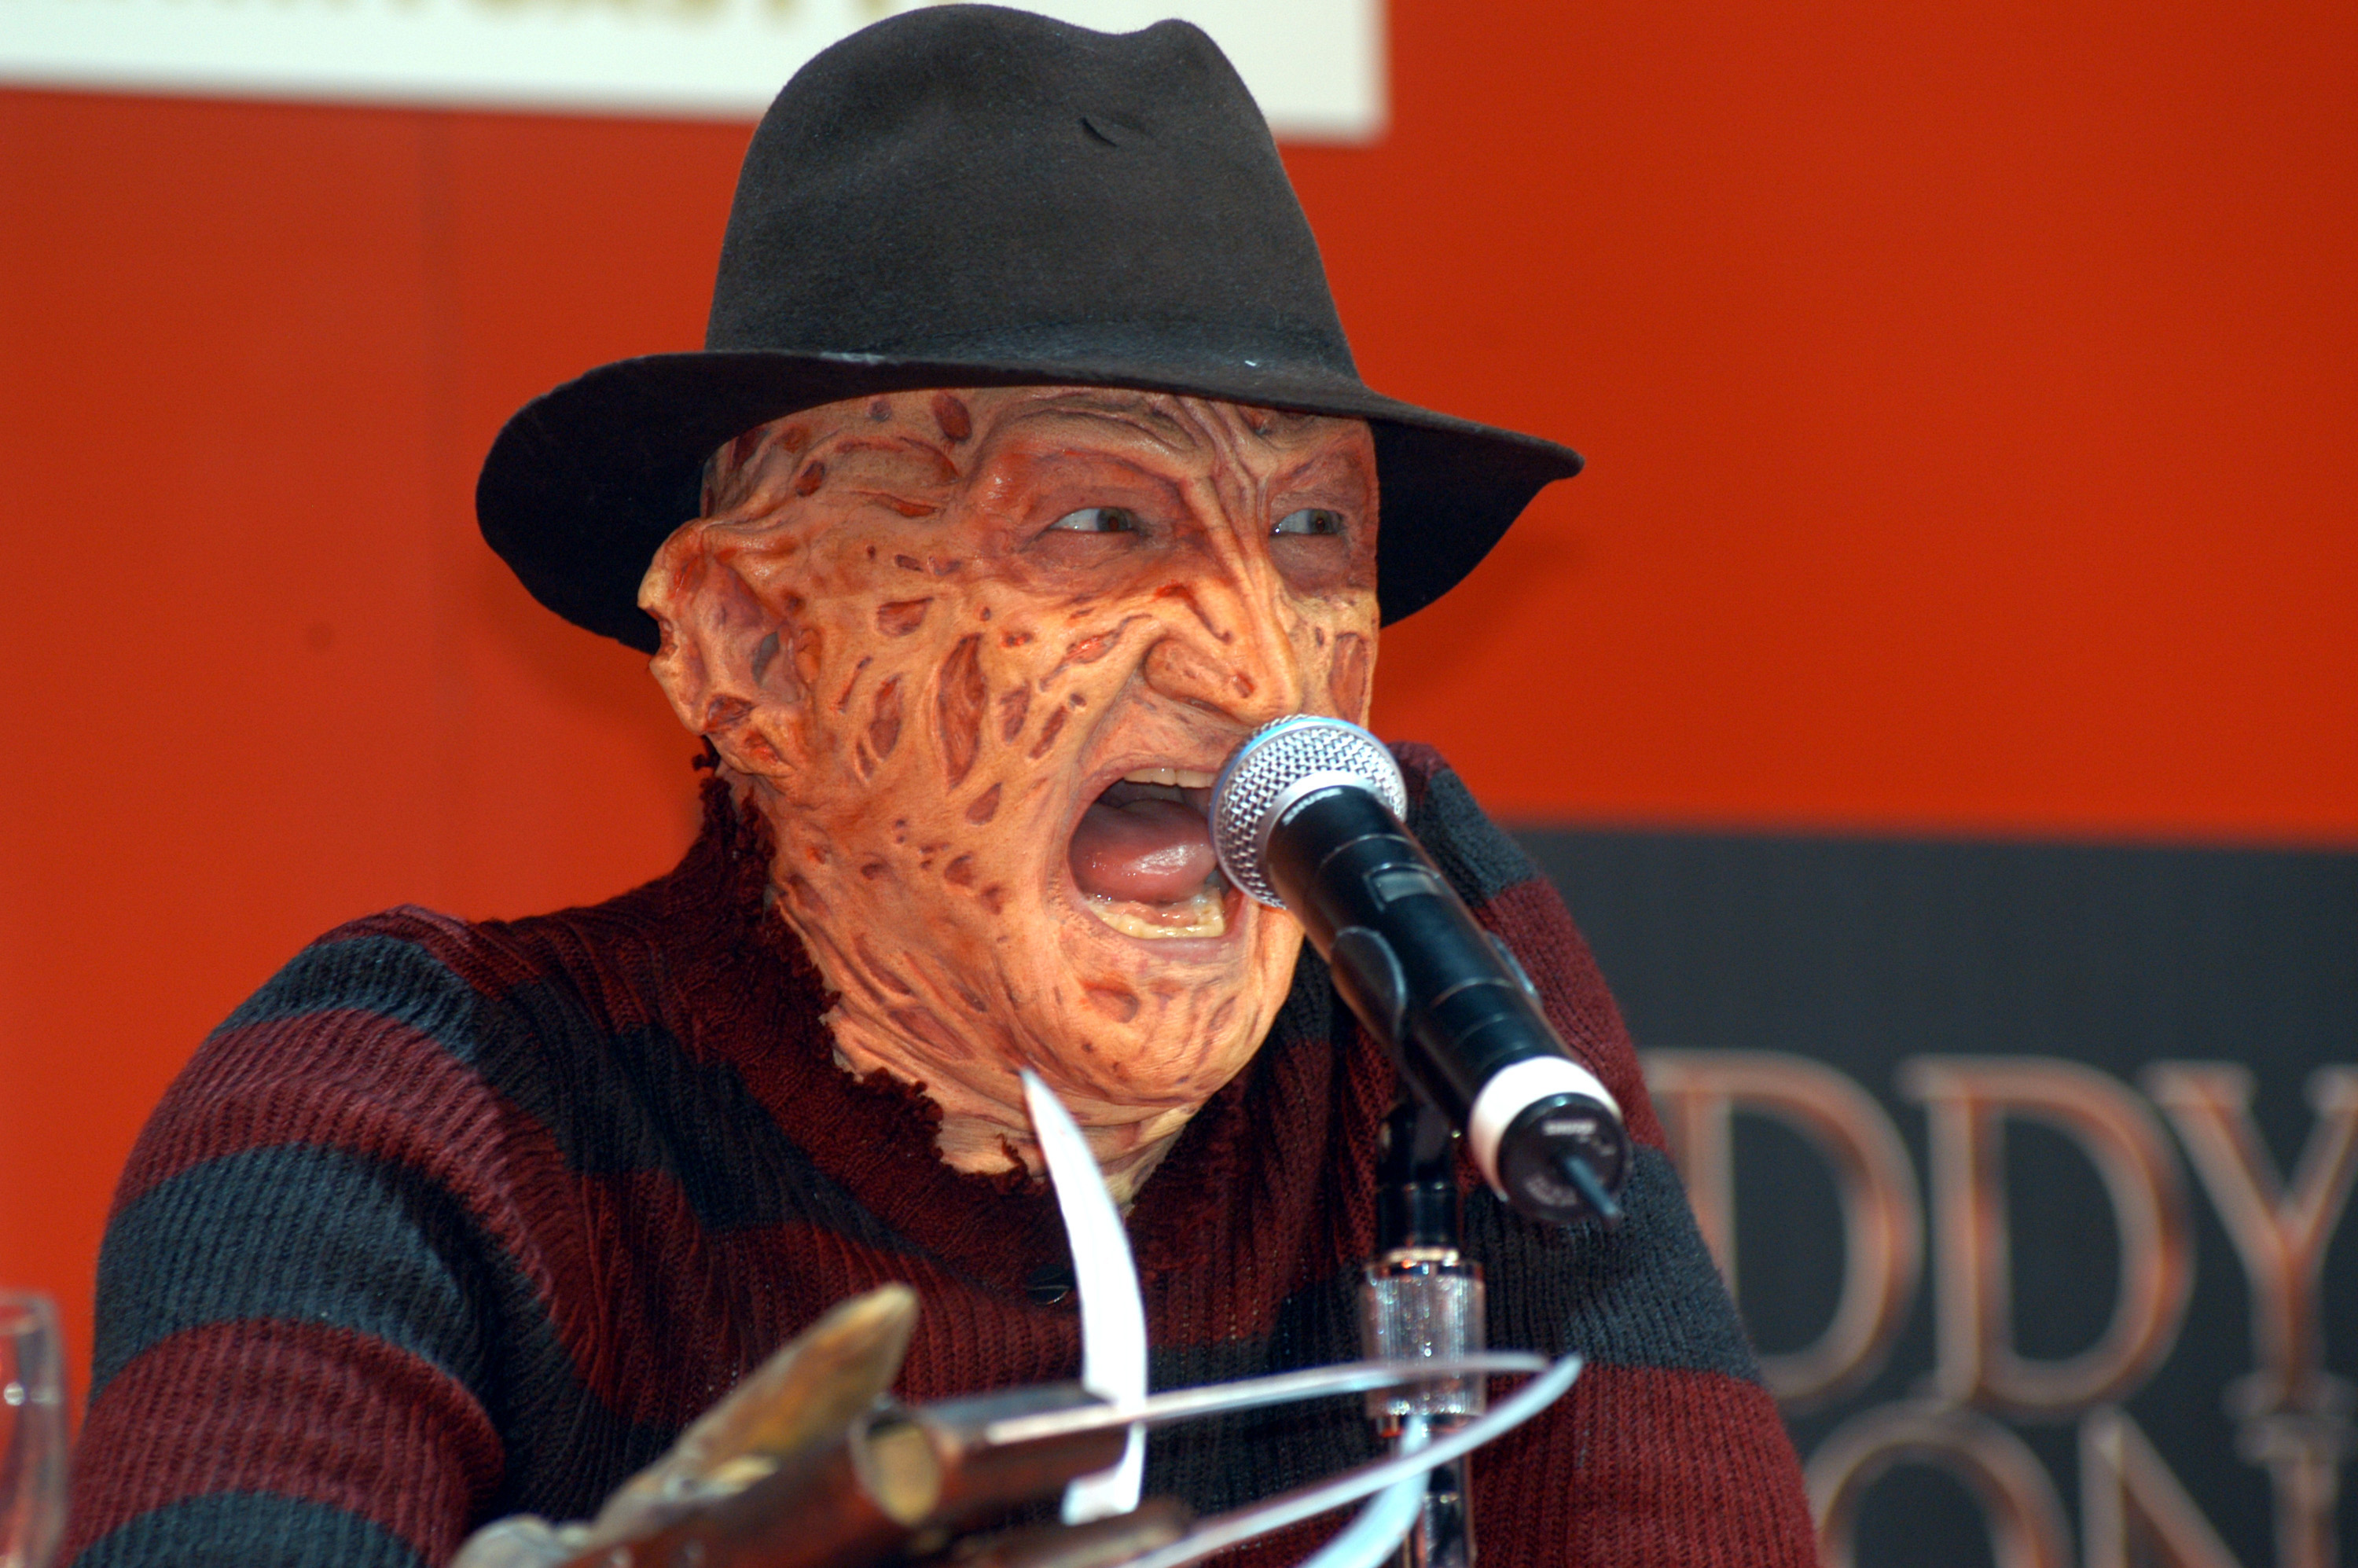 Robert Englund dressed as Freddy Krueger